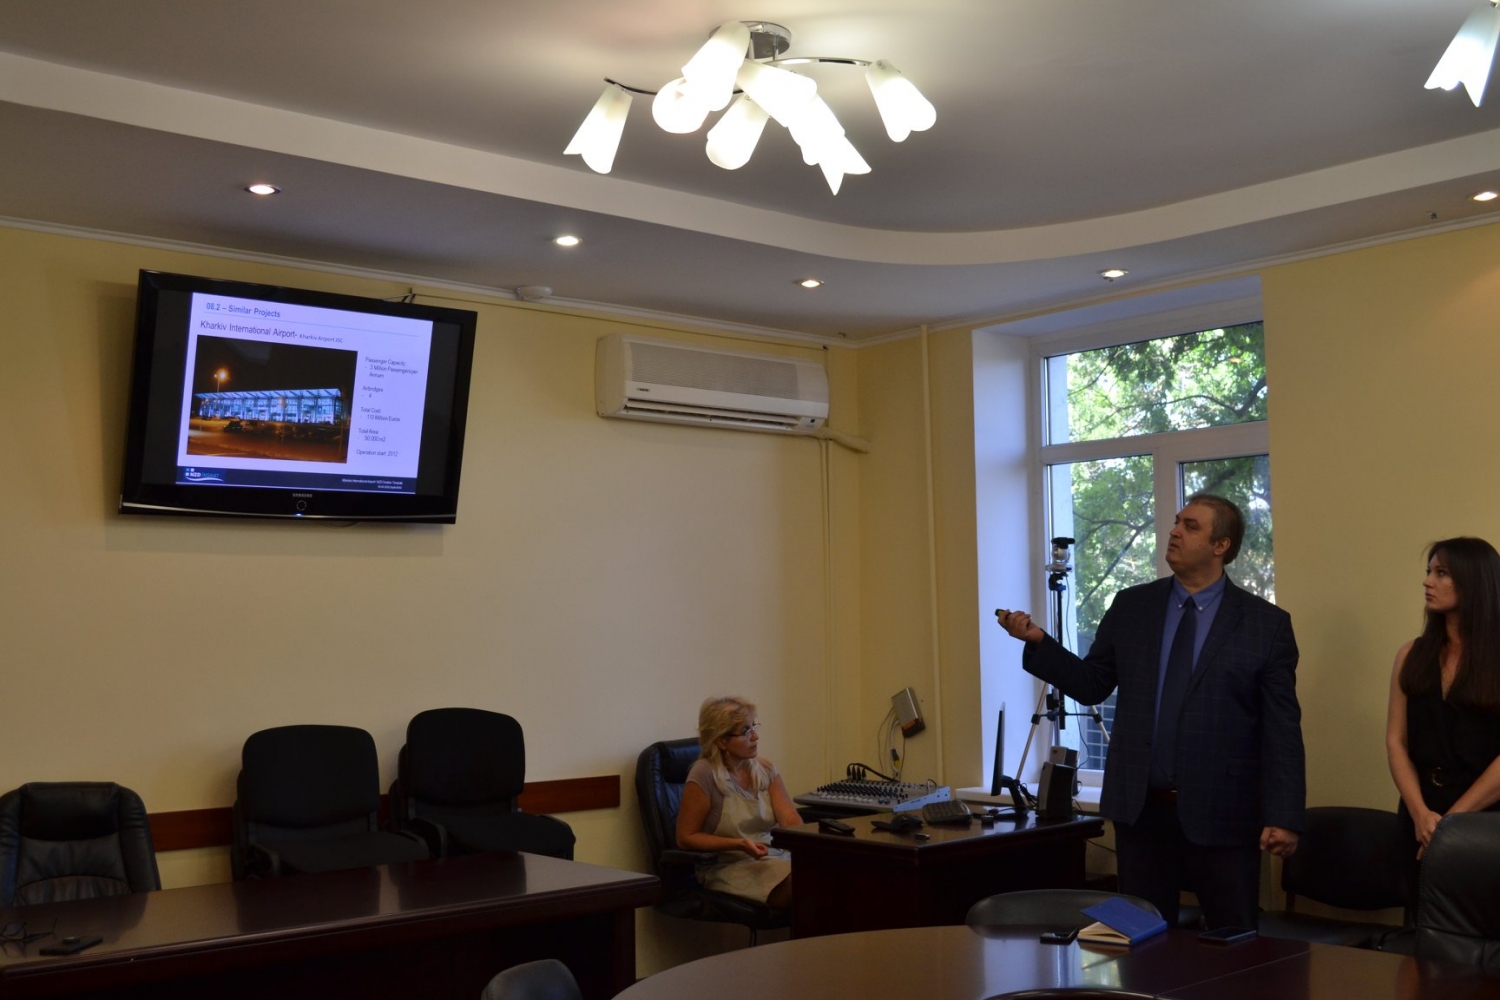  Представитель NZD İnşaat рассказывает о том, как компания реконструировала аэропорт в Харькове